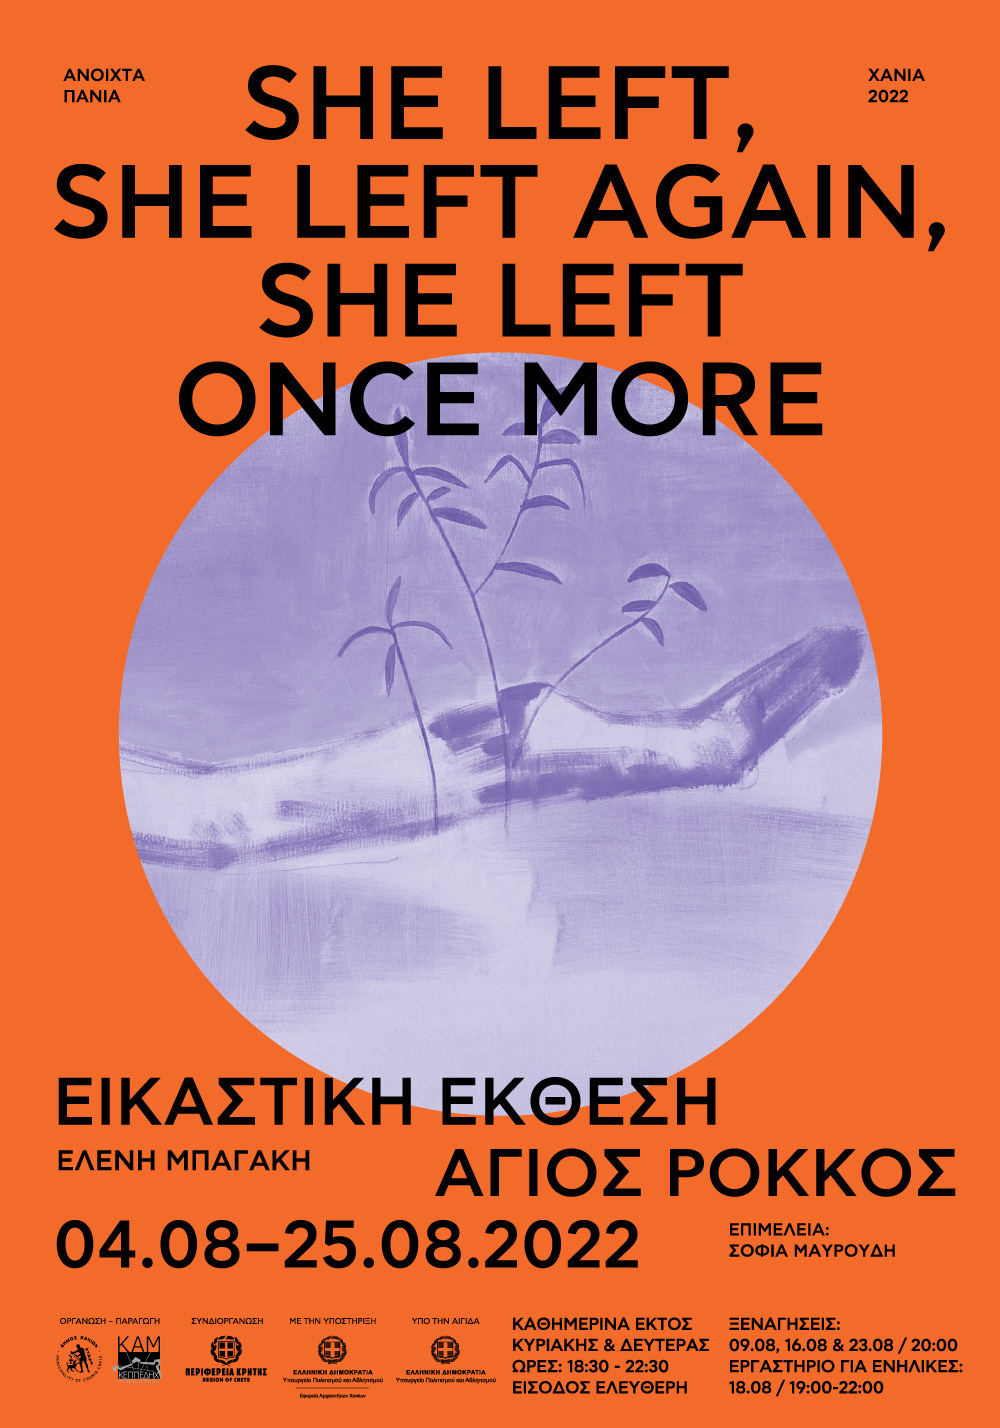 Ανοιχτά Πανιά 2022 – She left, she left again, she left once more